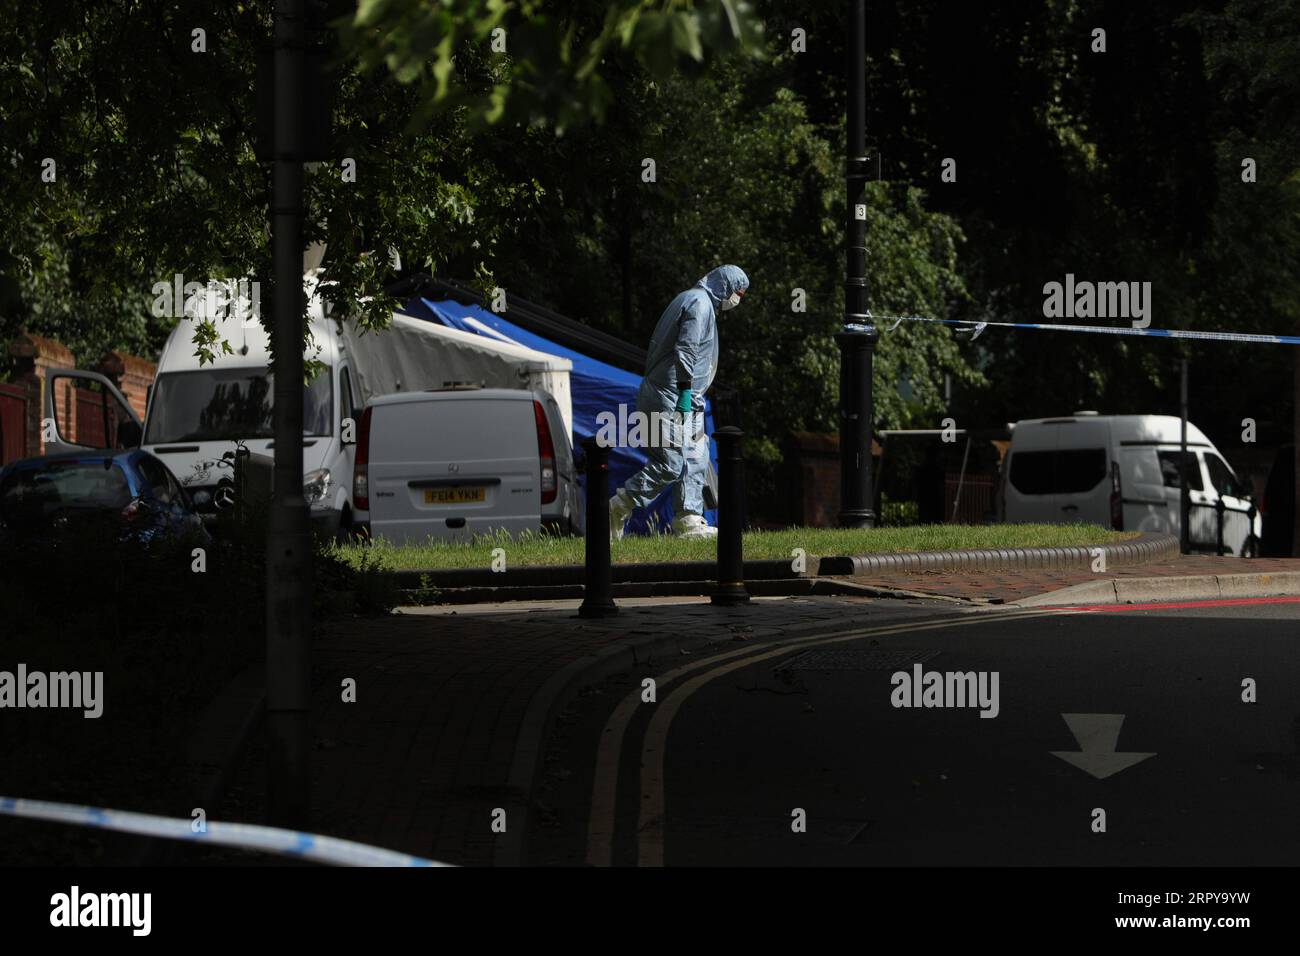 200621 -- READING BRITAIN, 21 juin 2020 Xinhua -- Un officier médico-légal de la police travaille derrière un cordon de police près de Forbury Gardens où des coups de couteau ont eu lieu à Reading, en Grande-Bretagne, le 21 juin 2020. La police antiterroriste britannique a déclaré dimanche que l incident de poignardage qui a eu lieu samedi soir dans la ville de Reading, dans le sud de l Angleterre, a été déclaré incident terroriste. Photo de Tim Ireland/Xinhua BRITAIN-LECTURE-POIGNARDAGE-INCIDENT TERRORISTE PUBLICATIONxNOTxINxCHN Banque D'Images